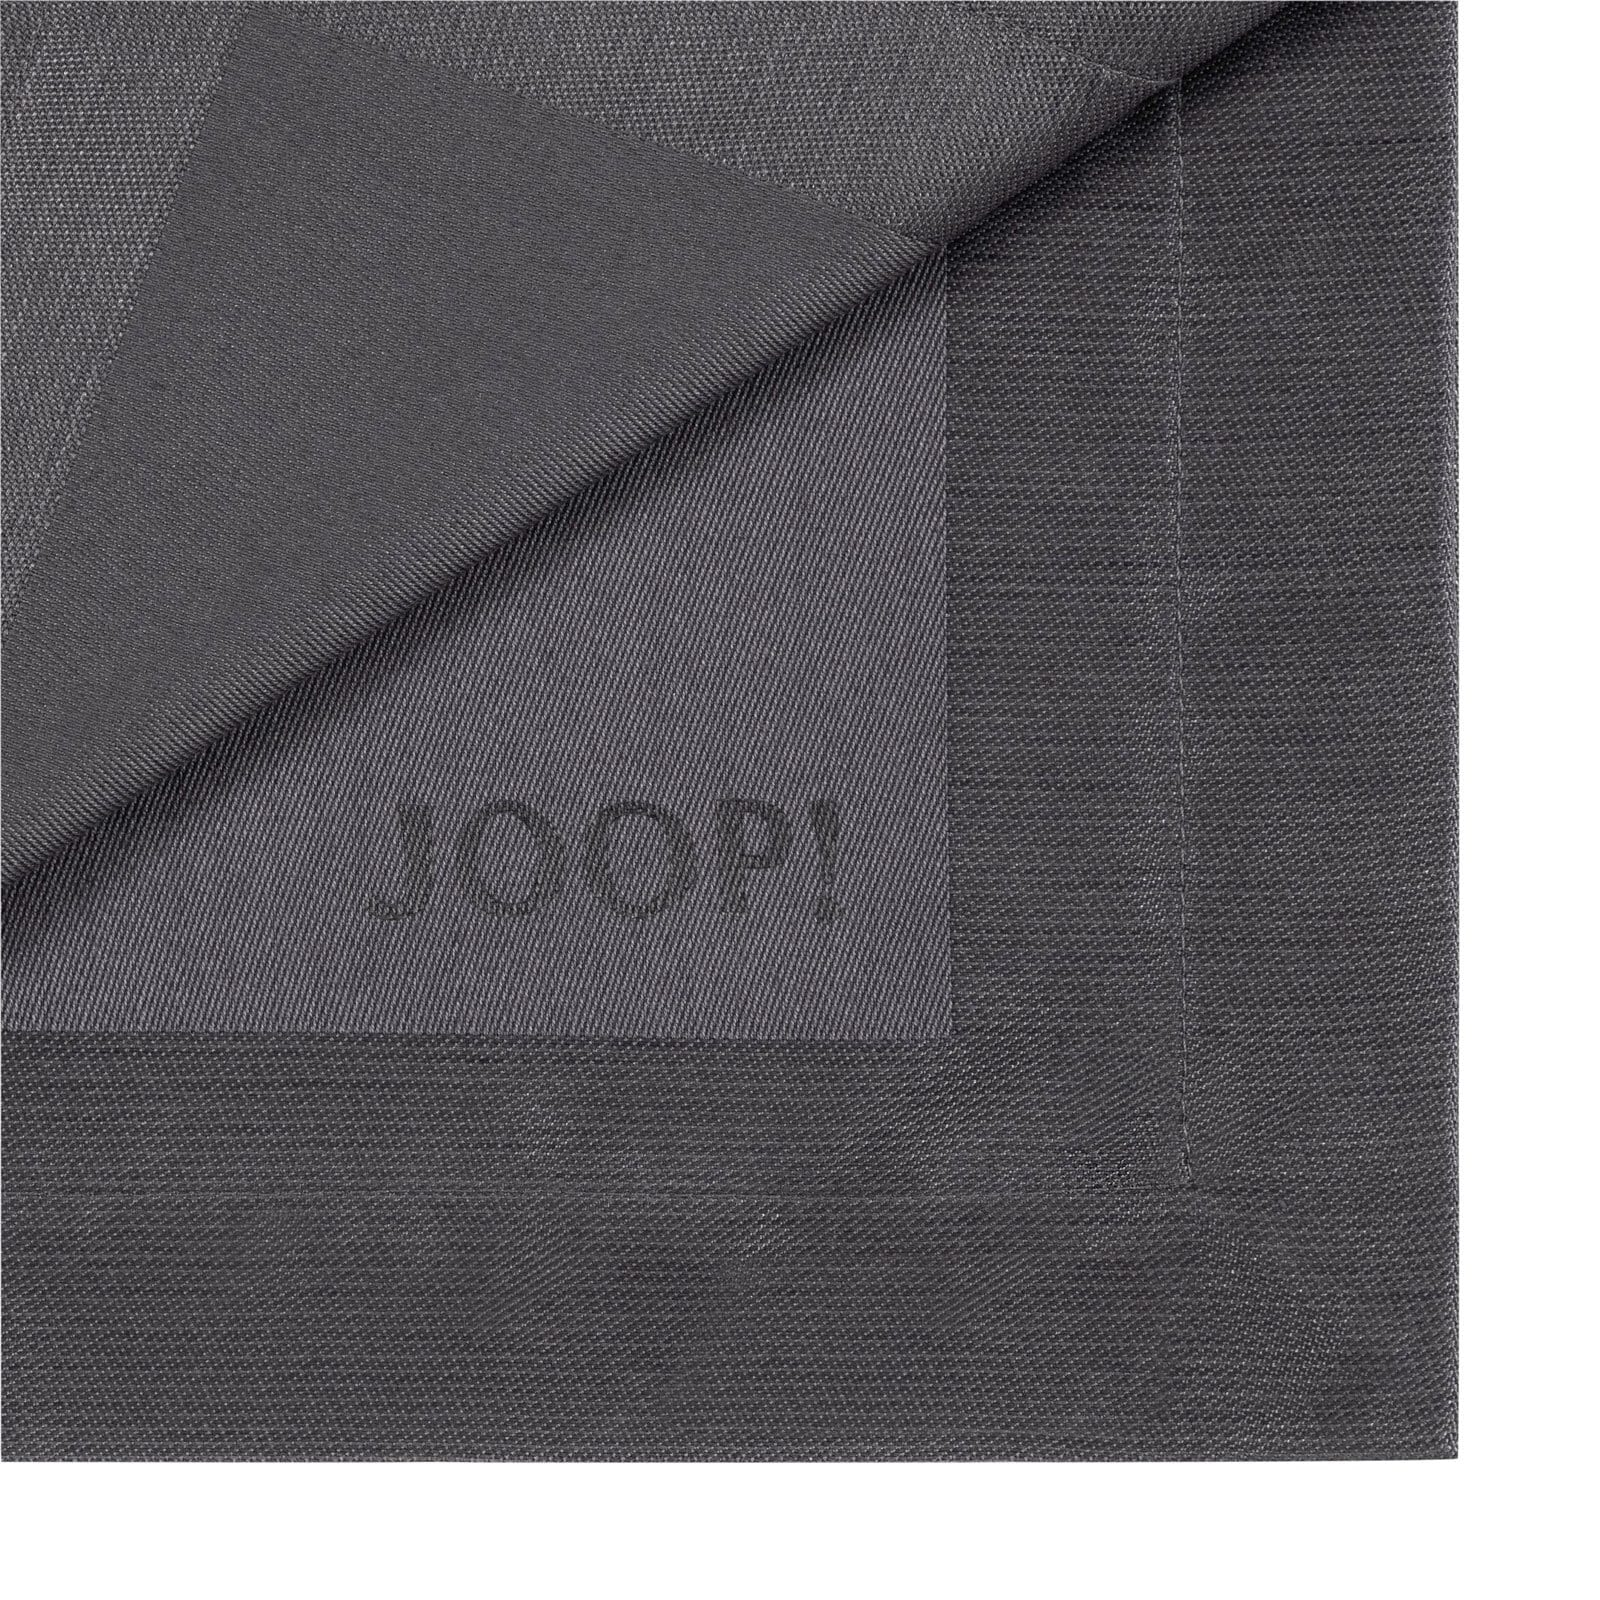 JOOP! Tischläufer SIGNATURE 50 x 160 cm graphitgrau